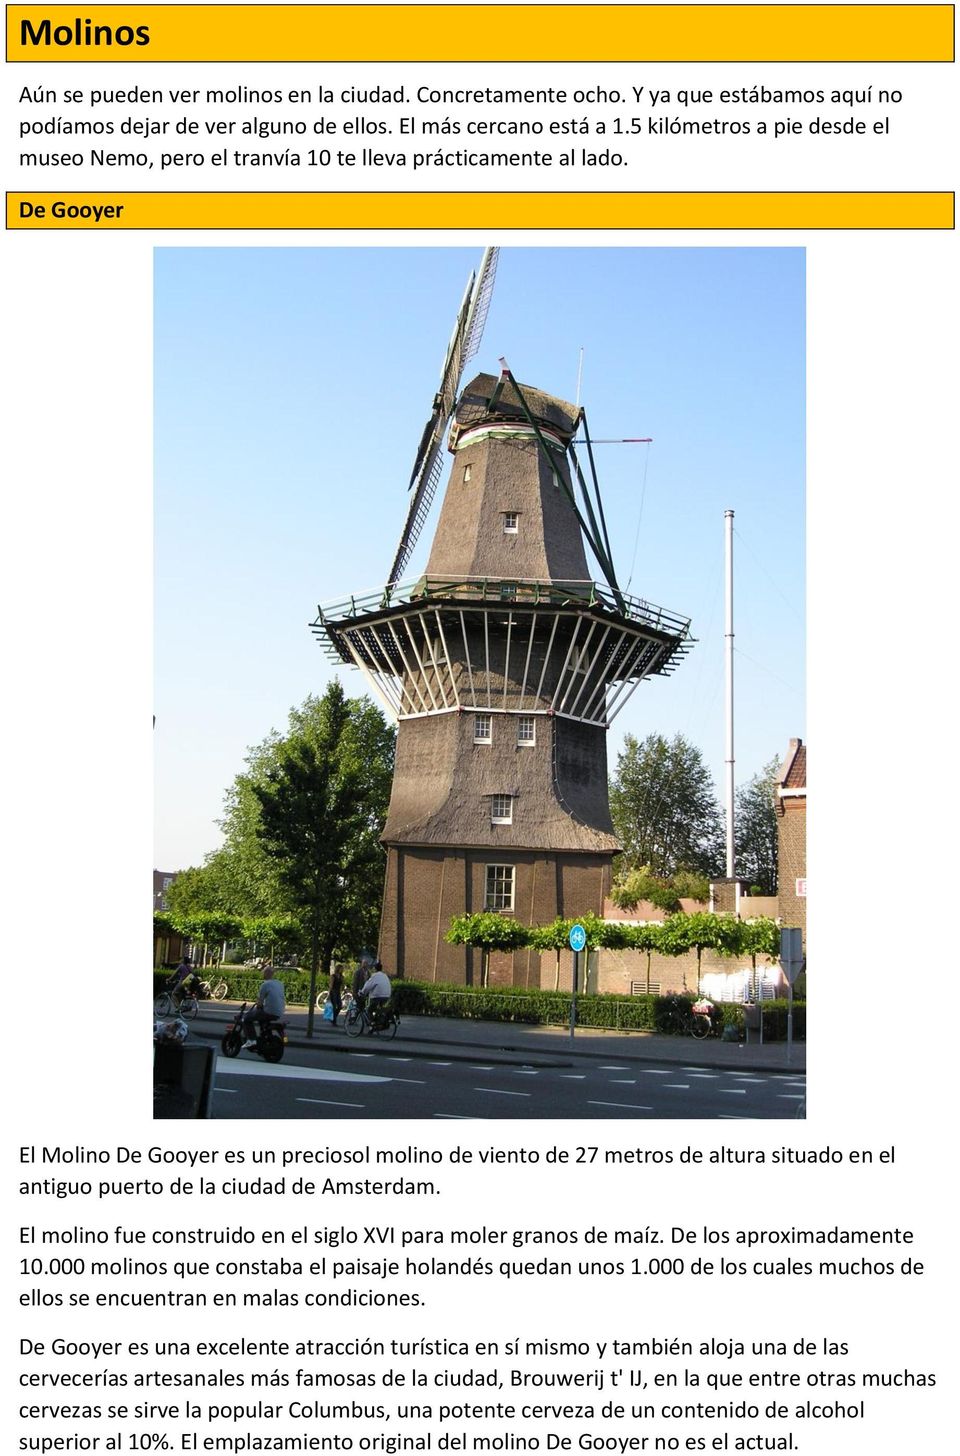 De Gooyer El Molino De Gooyer es un preciosol molino de viento de 27 metros de altura situado en el antiguo puerto de la ciudad de Amsterdam.